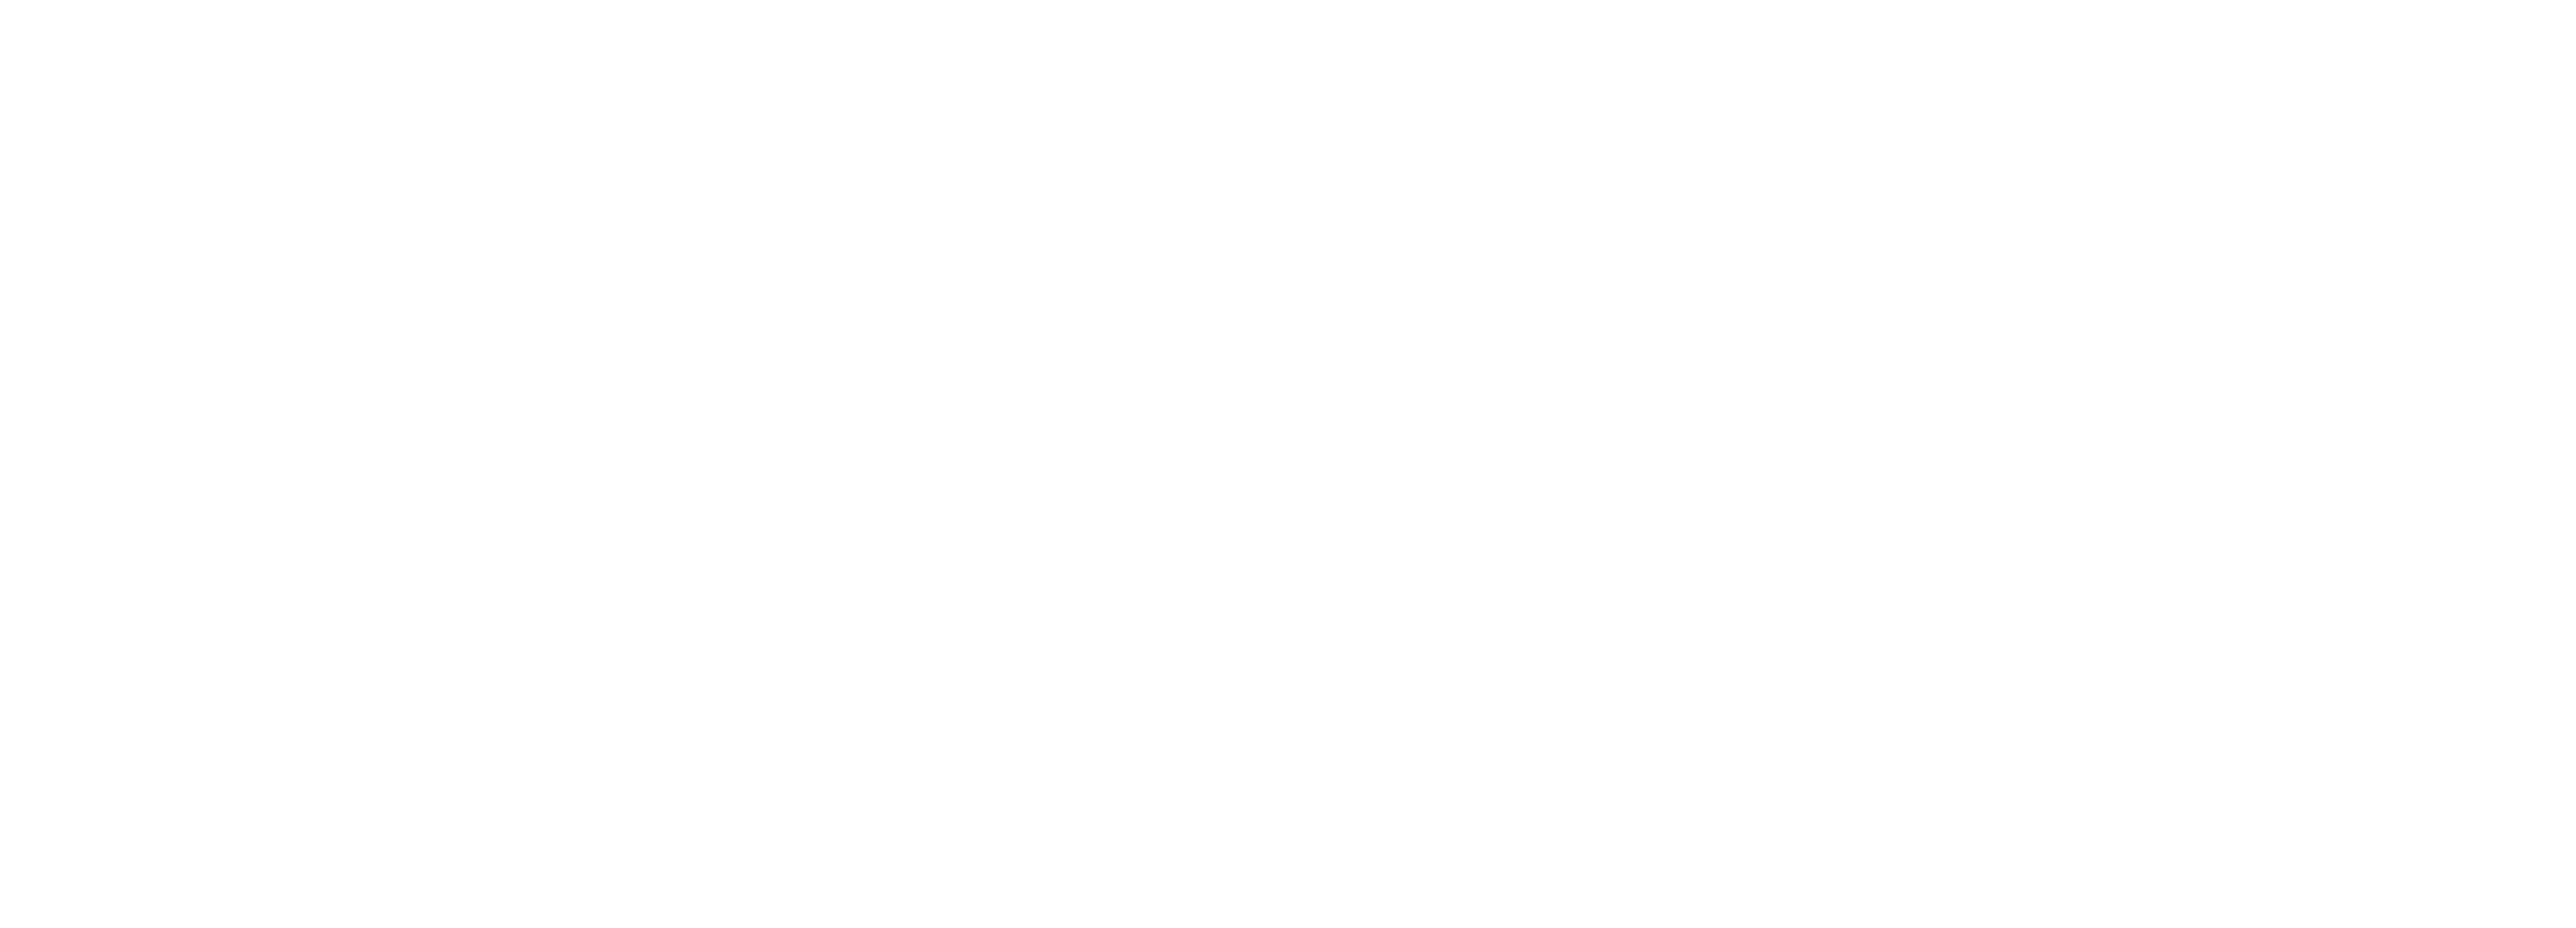 Forum des 100 - Rendez-vous #2: Pour un nouveau pacte social urbain